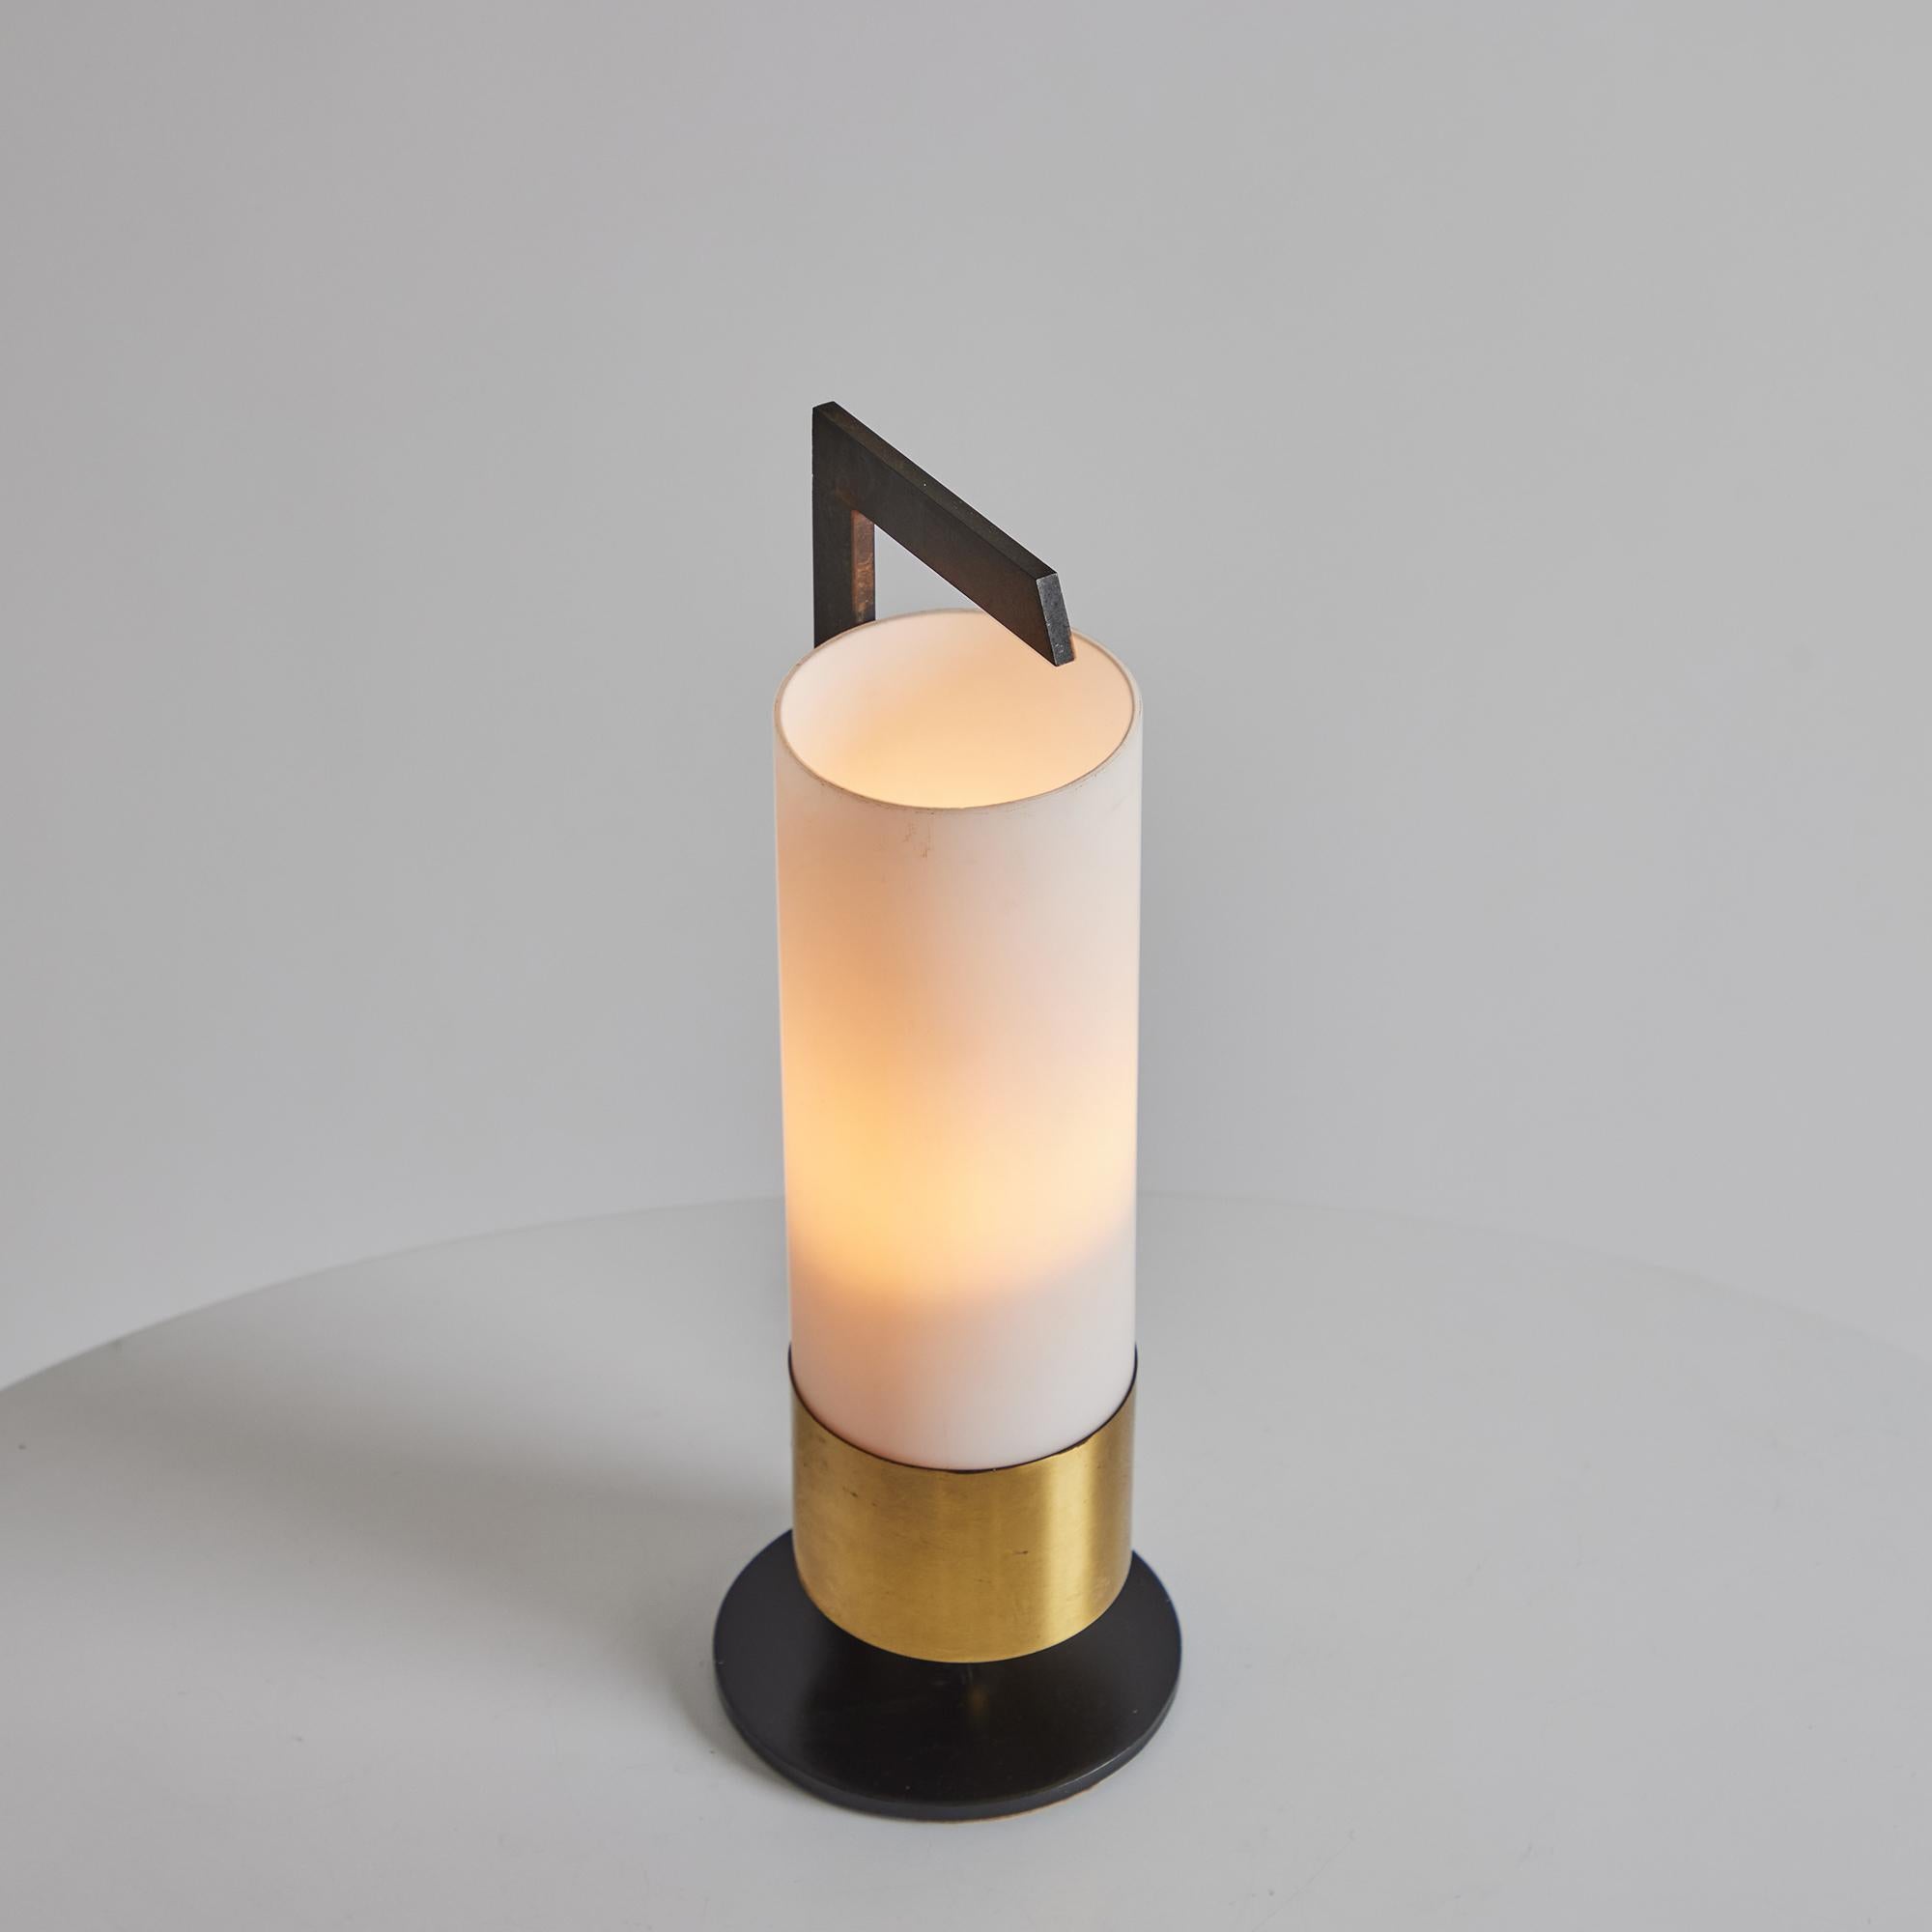 Lampe de table cylindrique en laiton et verre opalin des années 1950 pour Arlus.

Exécutée en verre opalin et en laiton patiné, cette lampe de table raffinée est attribuée au fabricant de luminaires français Arlus. Minimaliste mais très